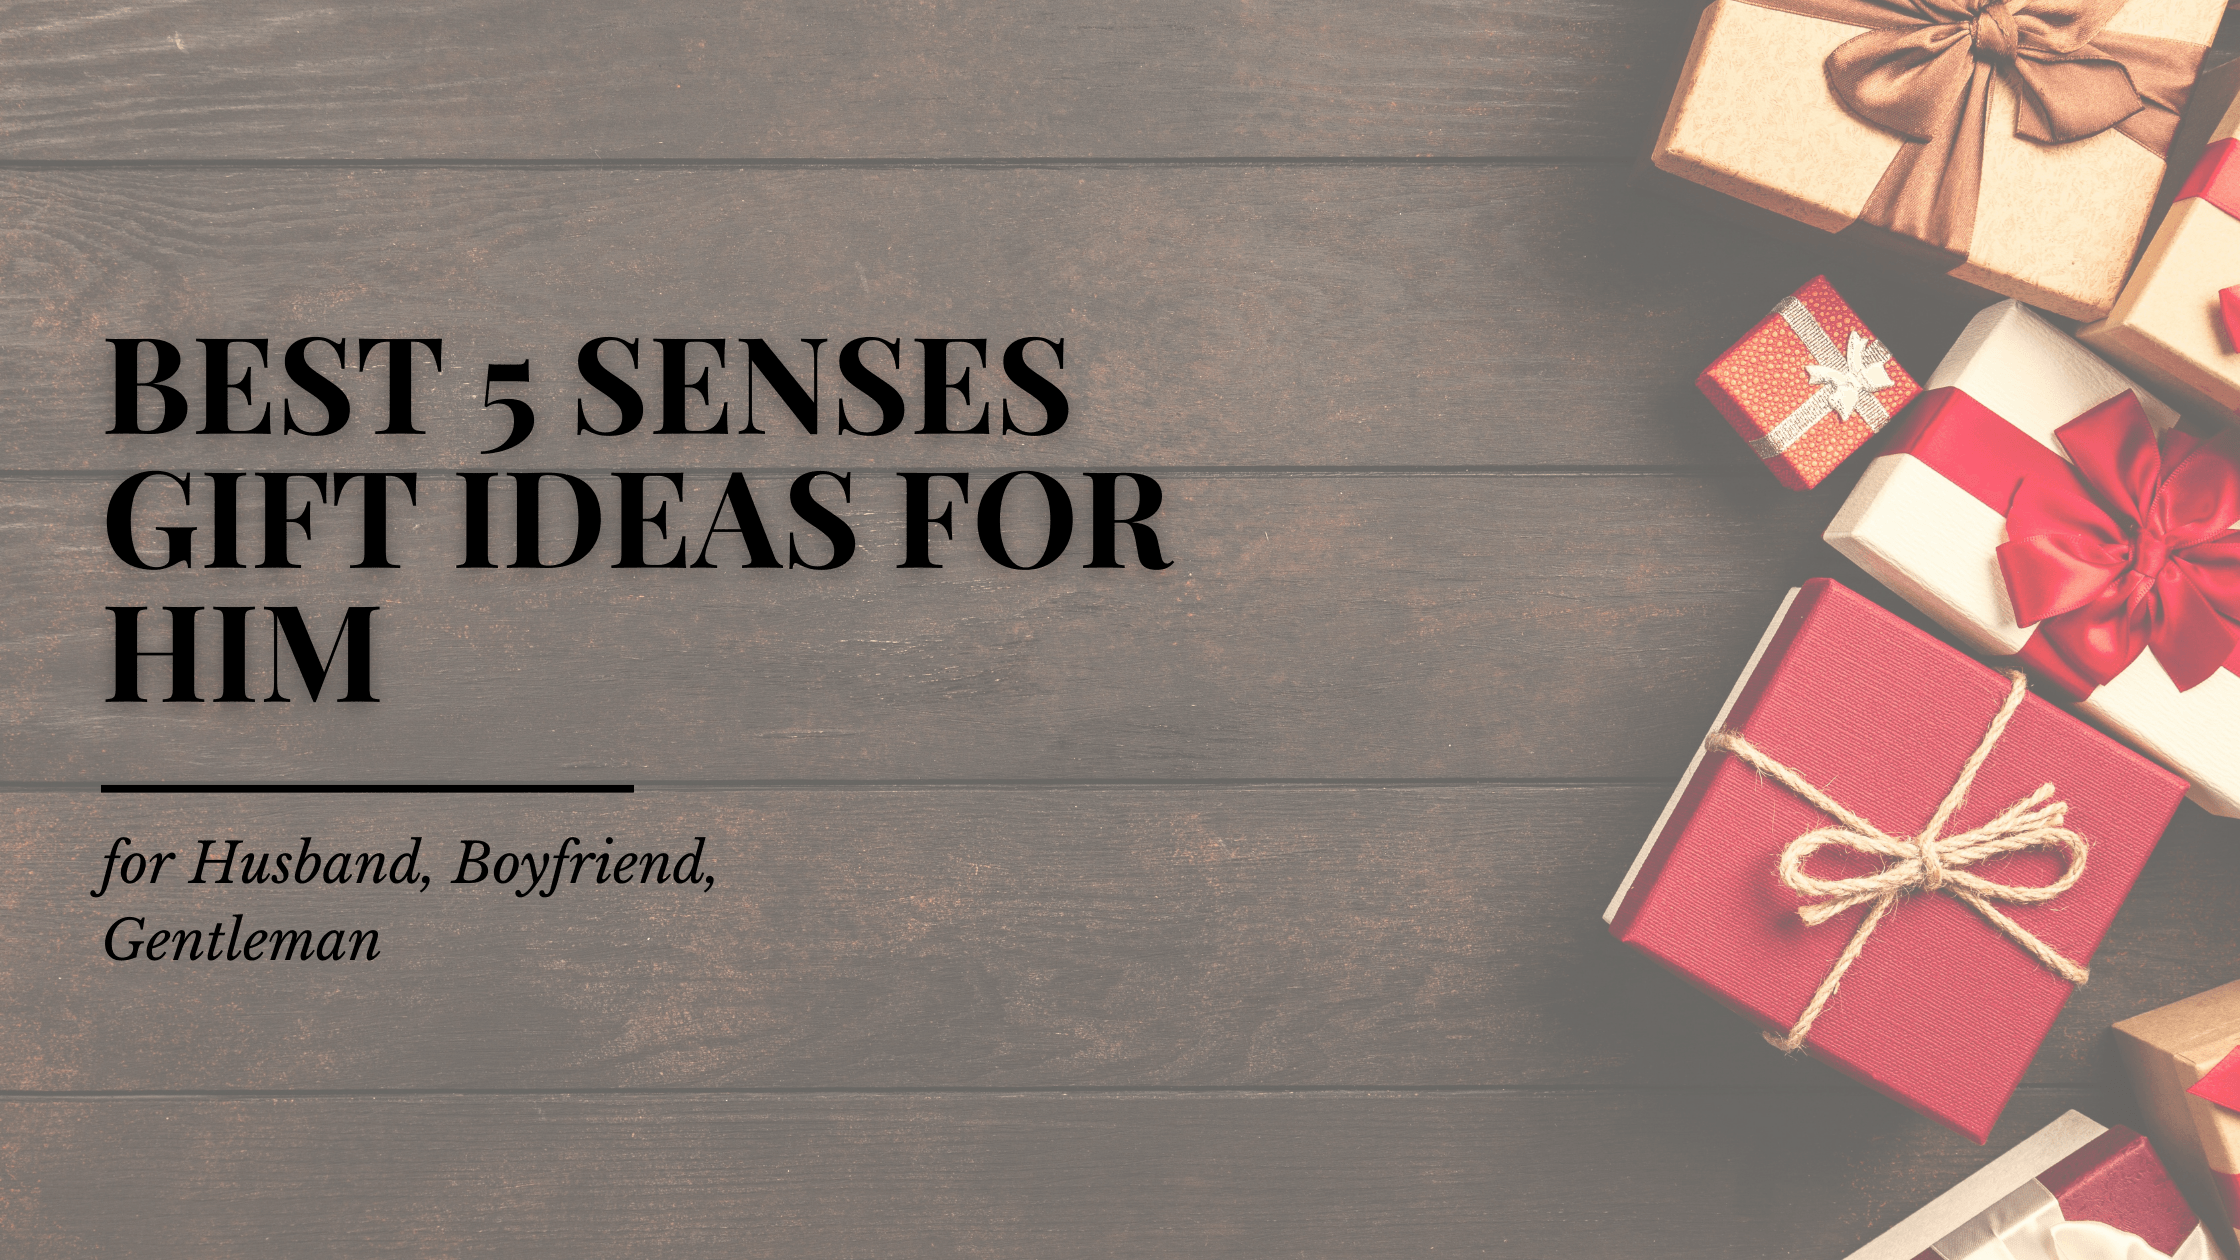 best 5 senses gift ideas for him or 5 senses gifts for husband boyfriend gentleman mandujour